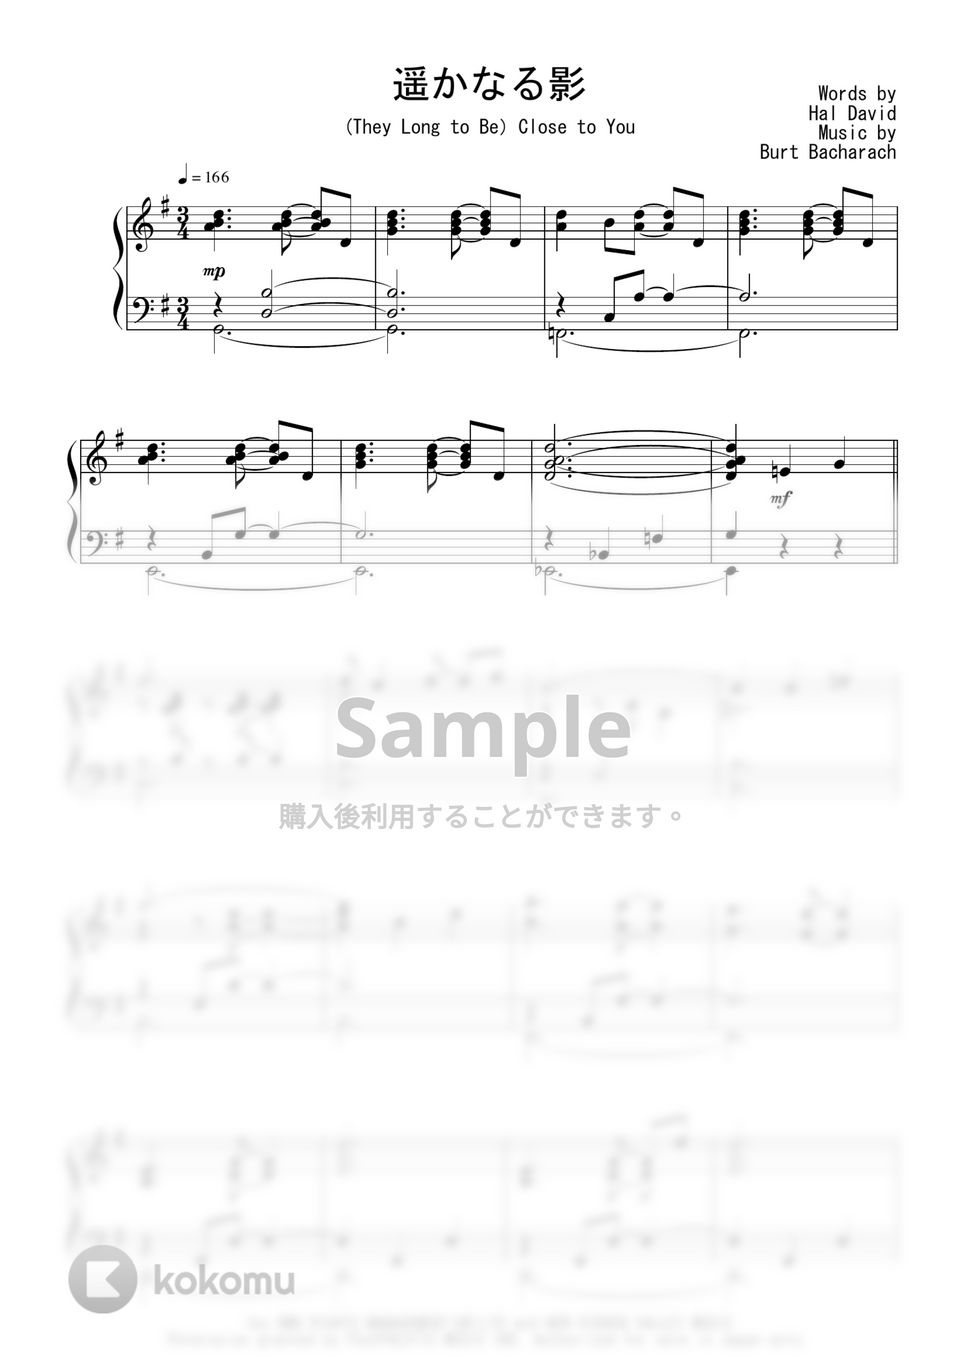 カーペンターズ - 遥かなる影 (Jazz Waltz Ver.) by Peony